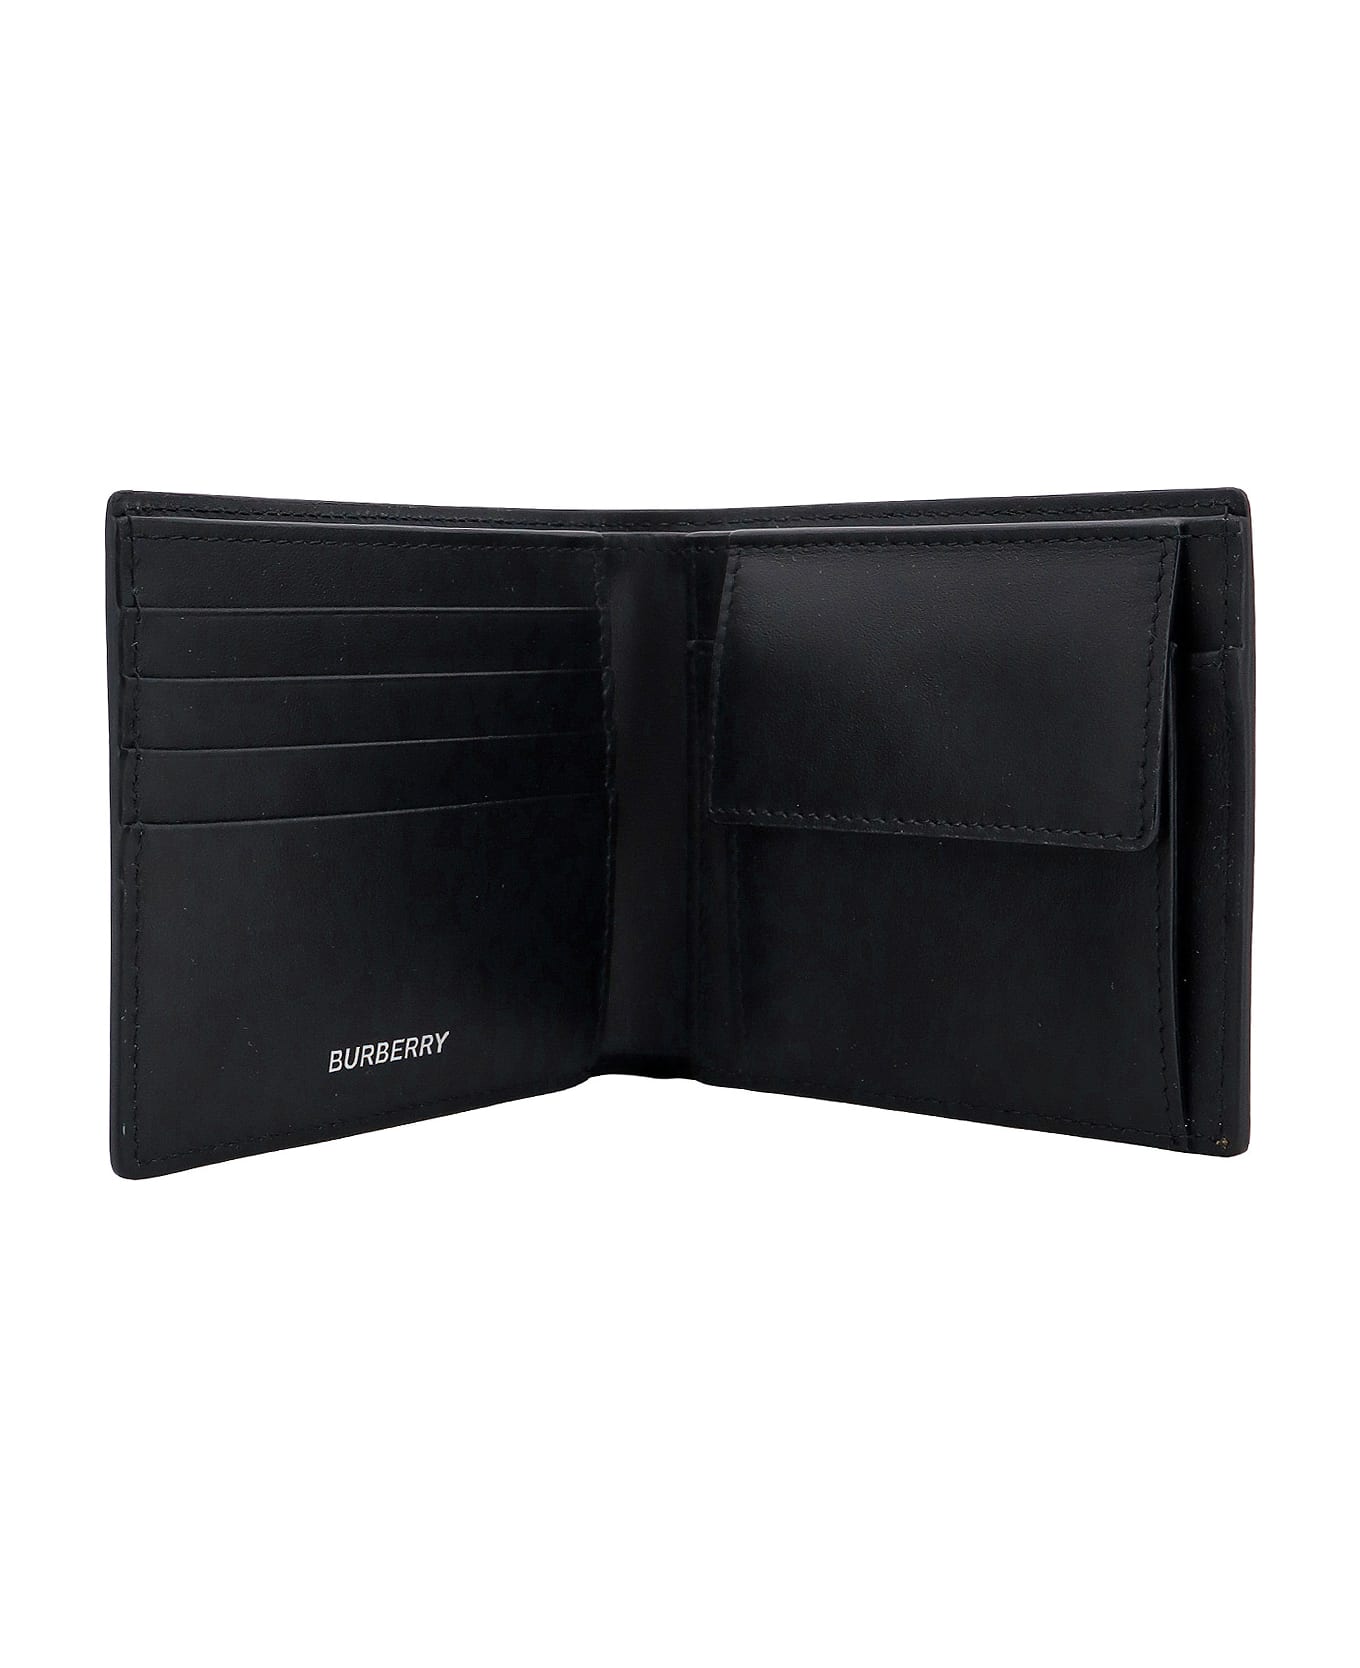 Burberry Wallet - Beige 財布